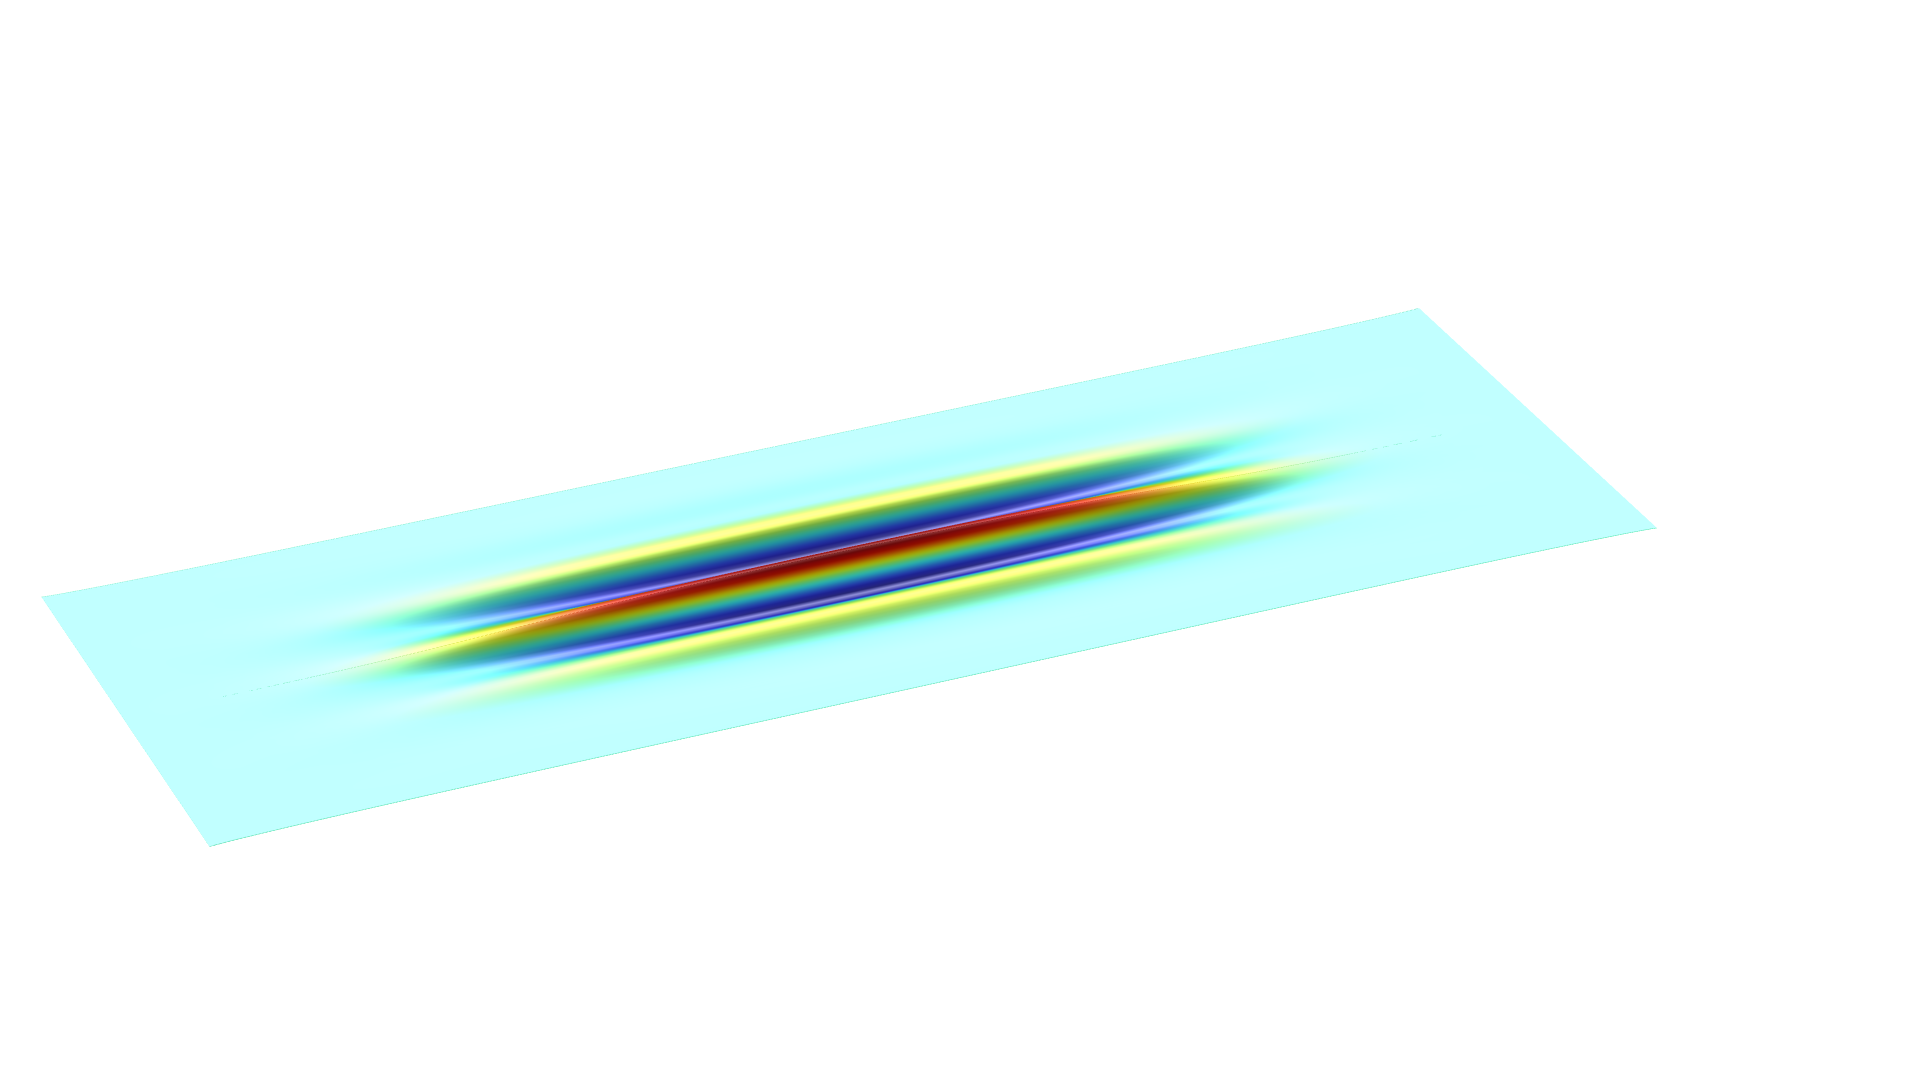 一个矩形片材模型，其中以 Rainbow 颜色表显示的褶皱。